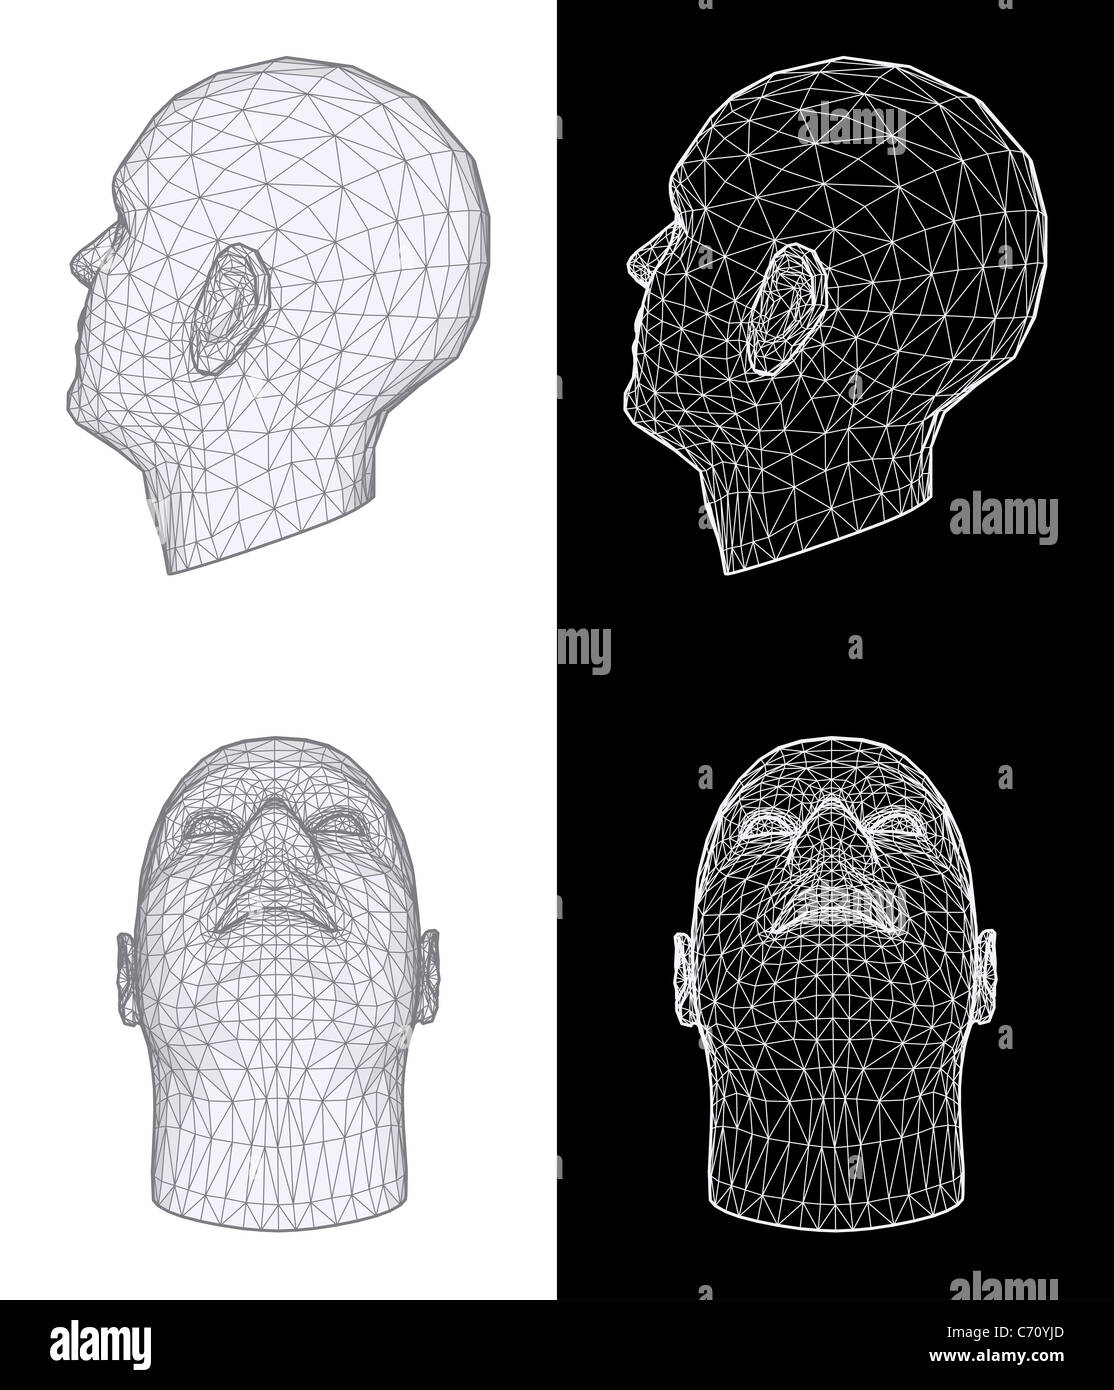 Human head 3D Illustration Stock Photo